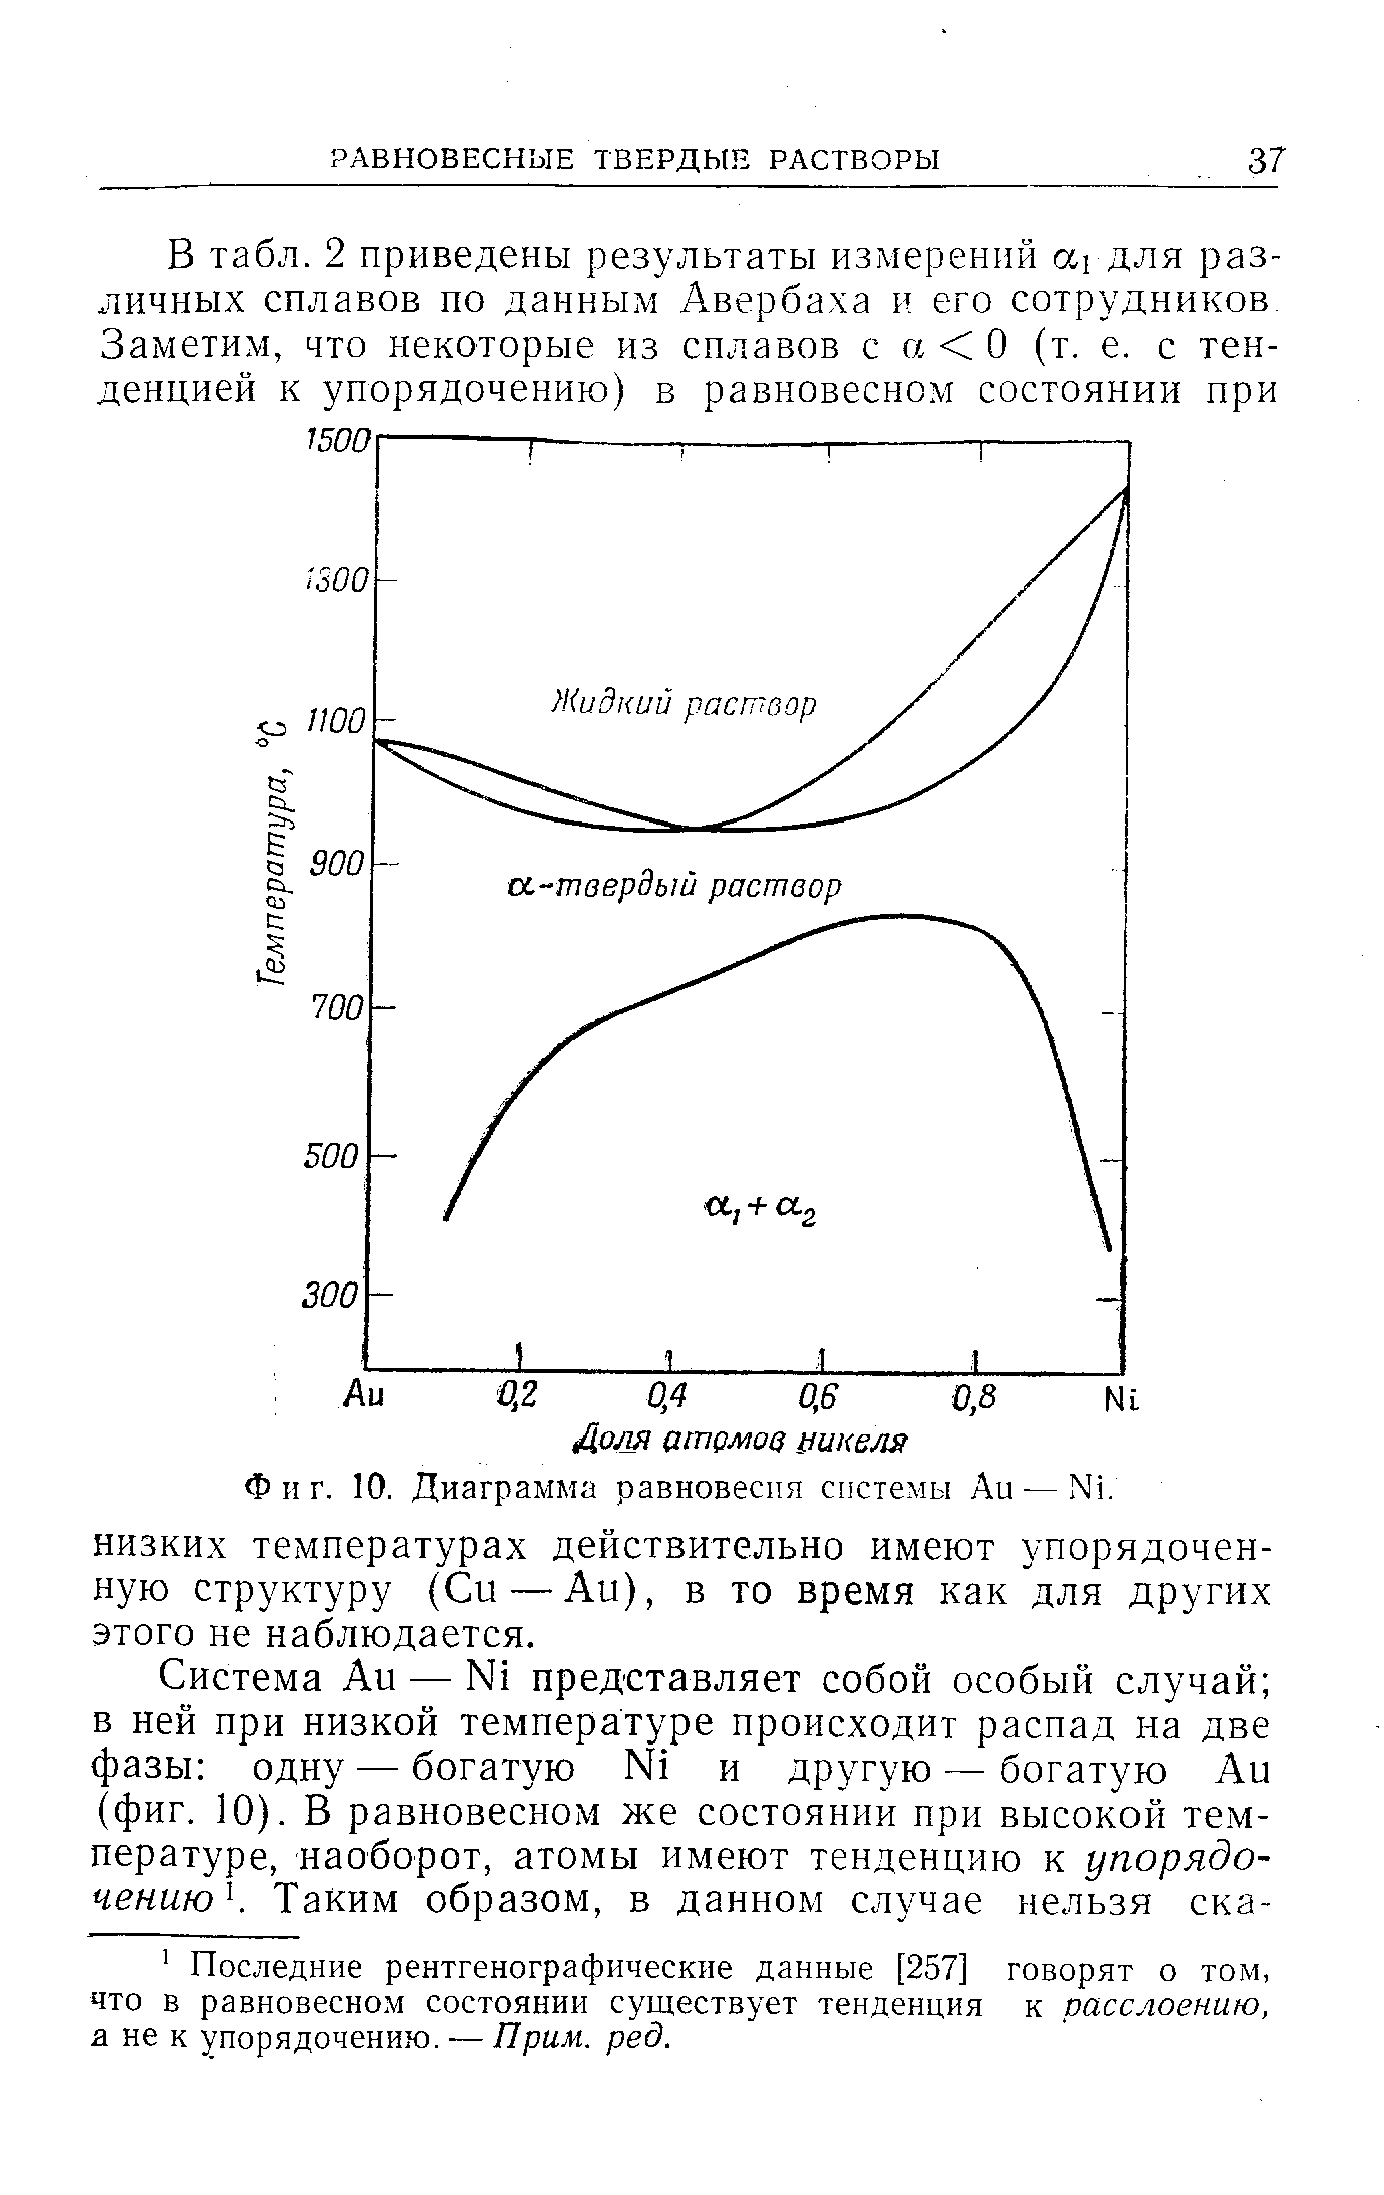 Диаграмма равновесия системы Аи — N1.